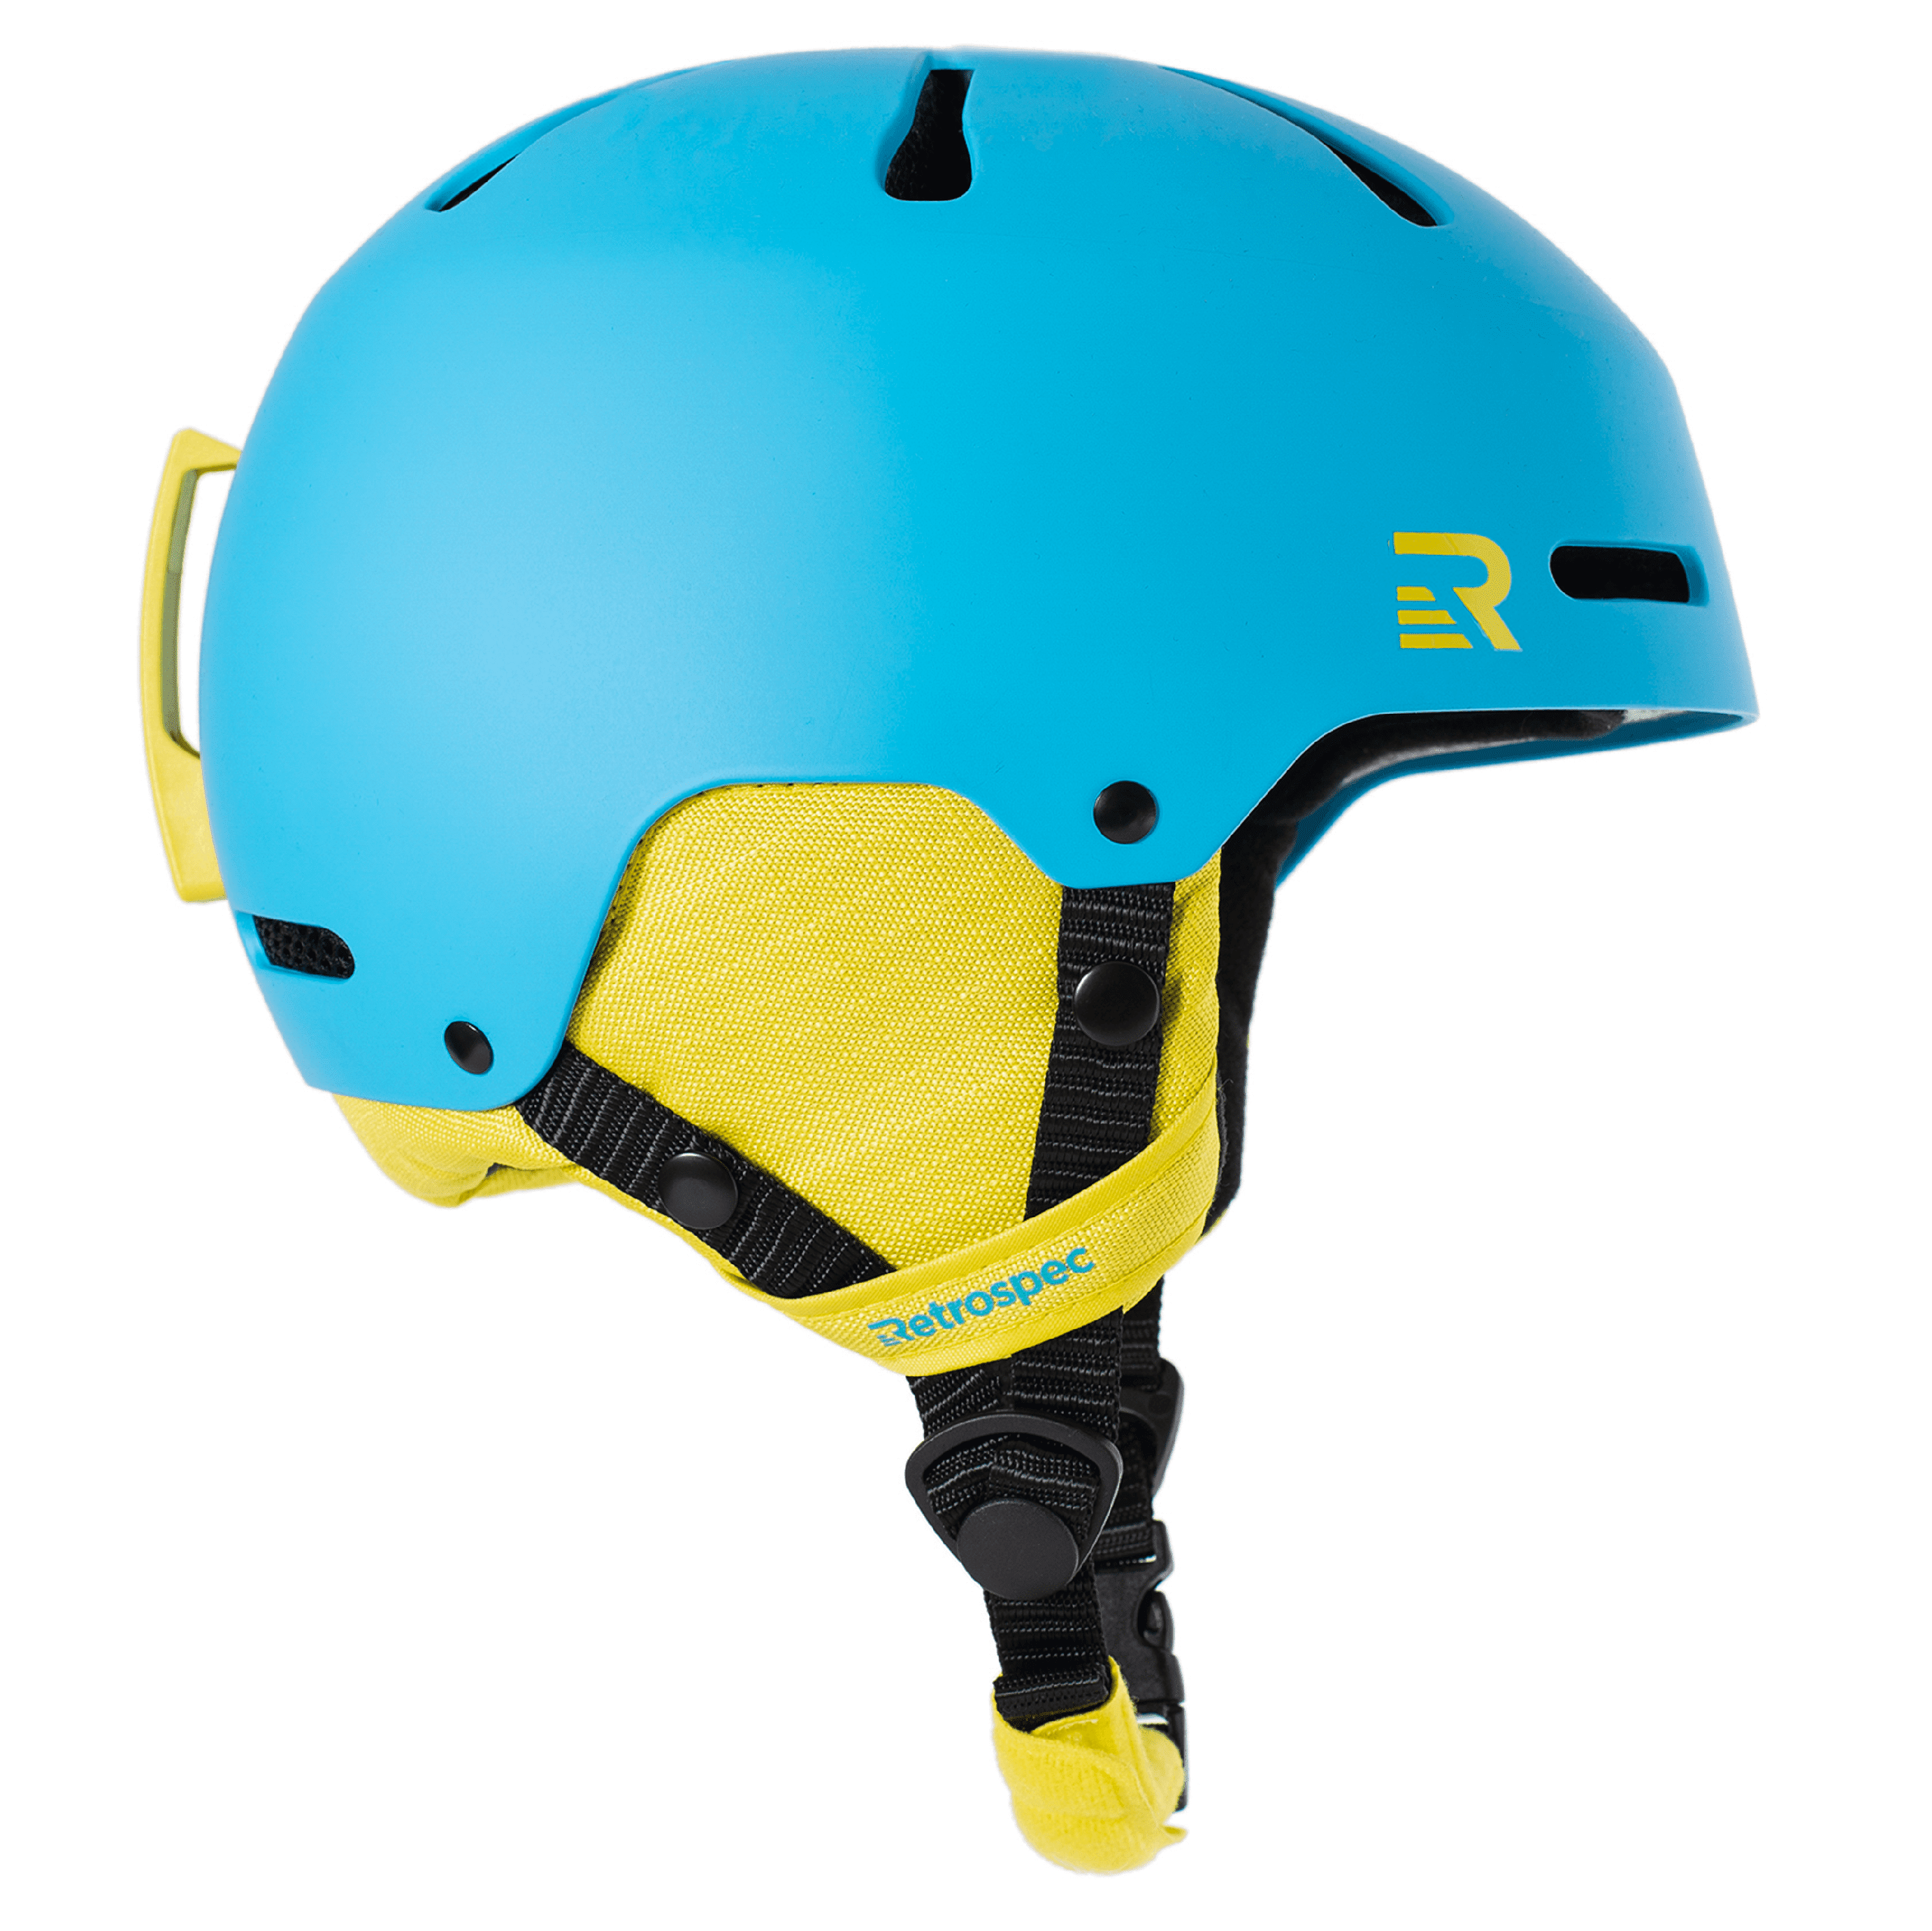 Details about   Retrospec Traverse H3  Ski & Snowboard Helmet With 10 Vents 